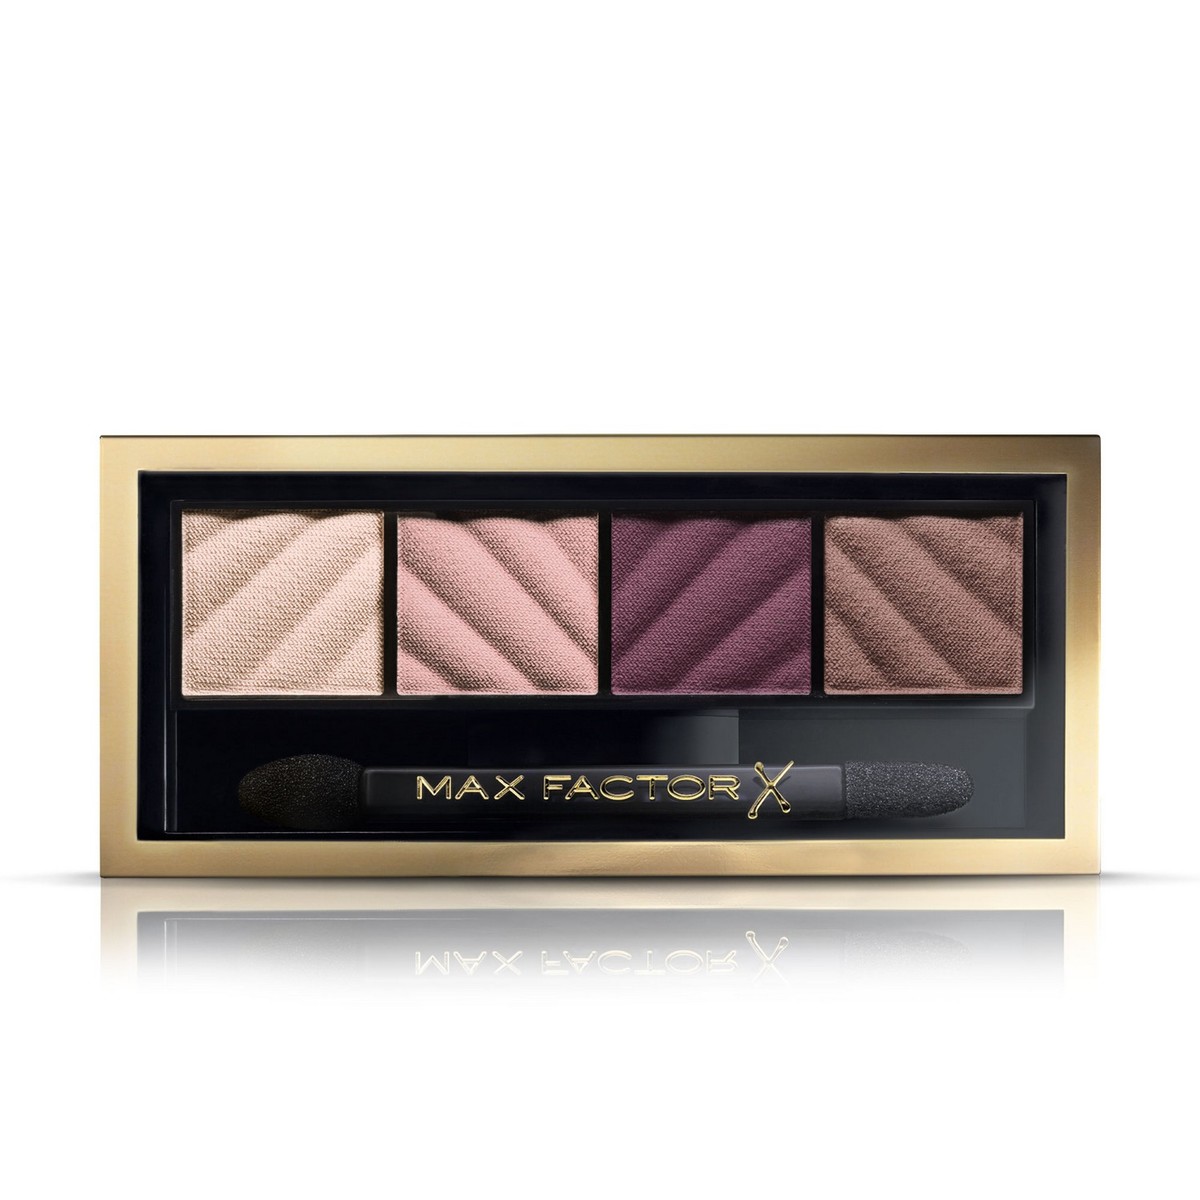 Max Factor Smokey Eye Matte Drama Kit Eyeshadow Palette 20 Rich Roses 1pc